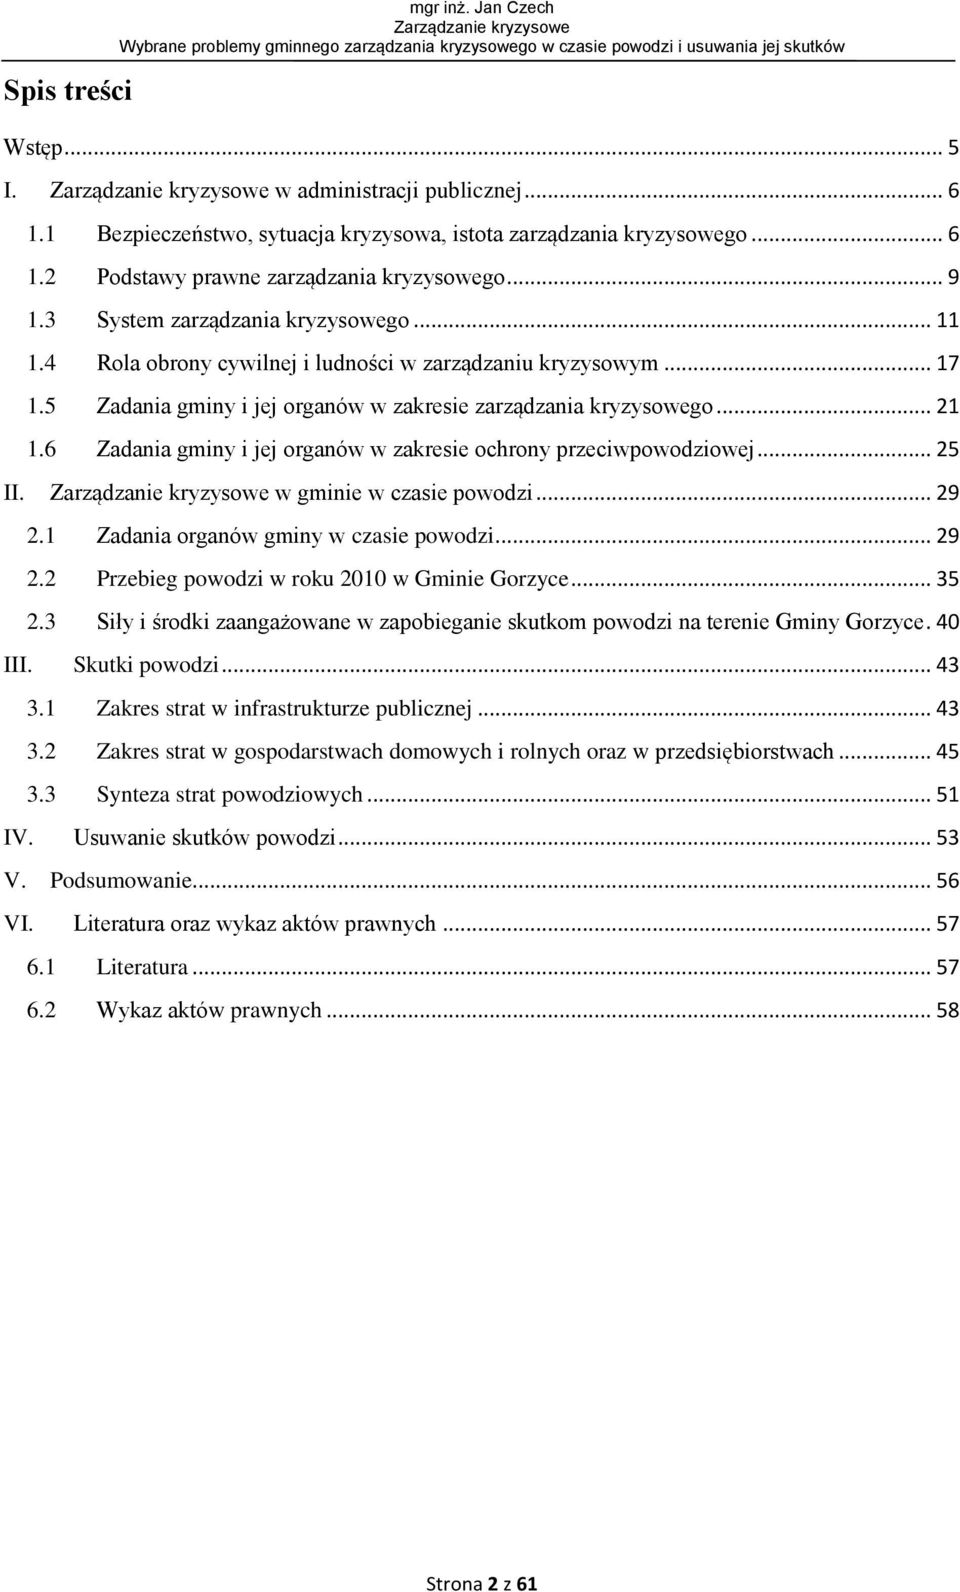 6 Zadania gminy i jej organów w zakresie ochrony przeciwpowodziowej... 25 II. w gminie w czasie powodzi... 29 2.1 Zadania organów gminy w czasie powodzi... 29 2.2 Przebieg powodzi w roku 2010 w Gminie Gorzyce.